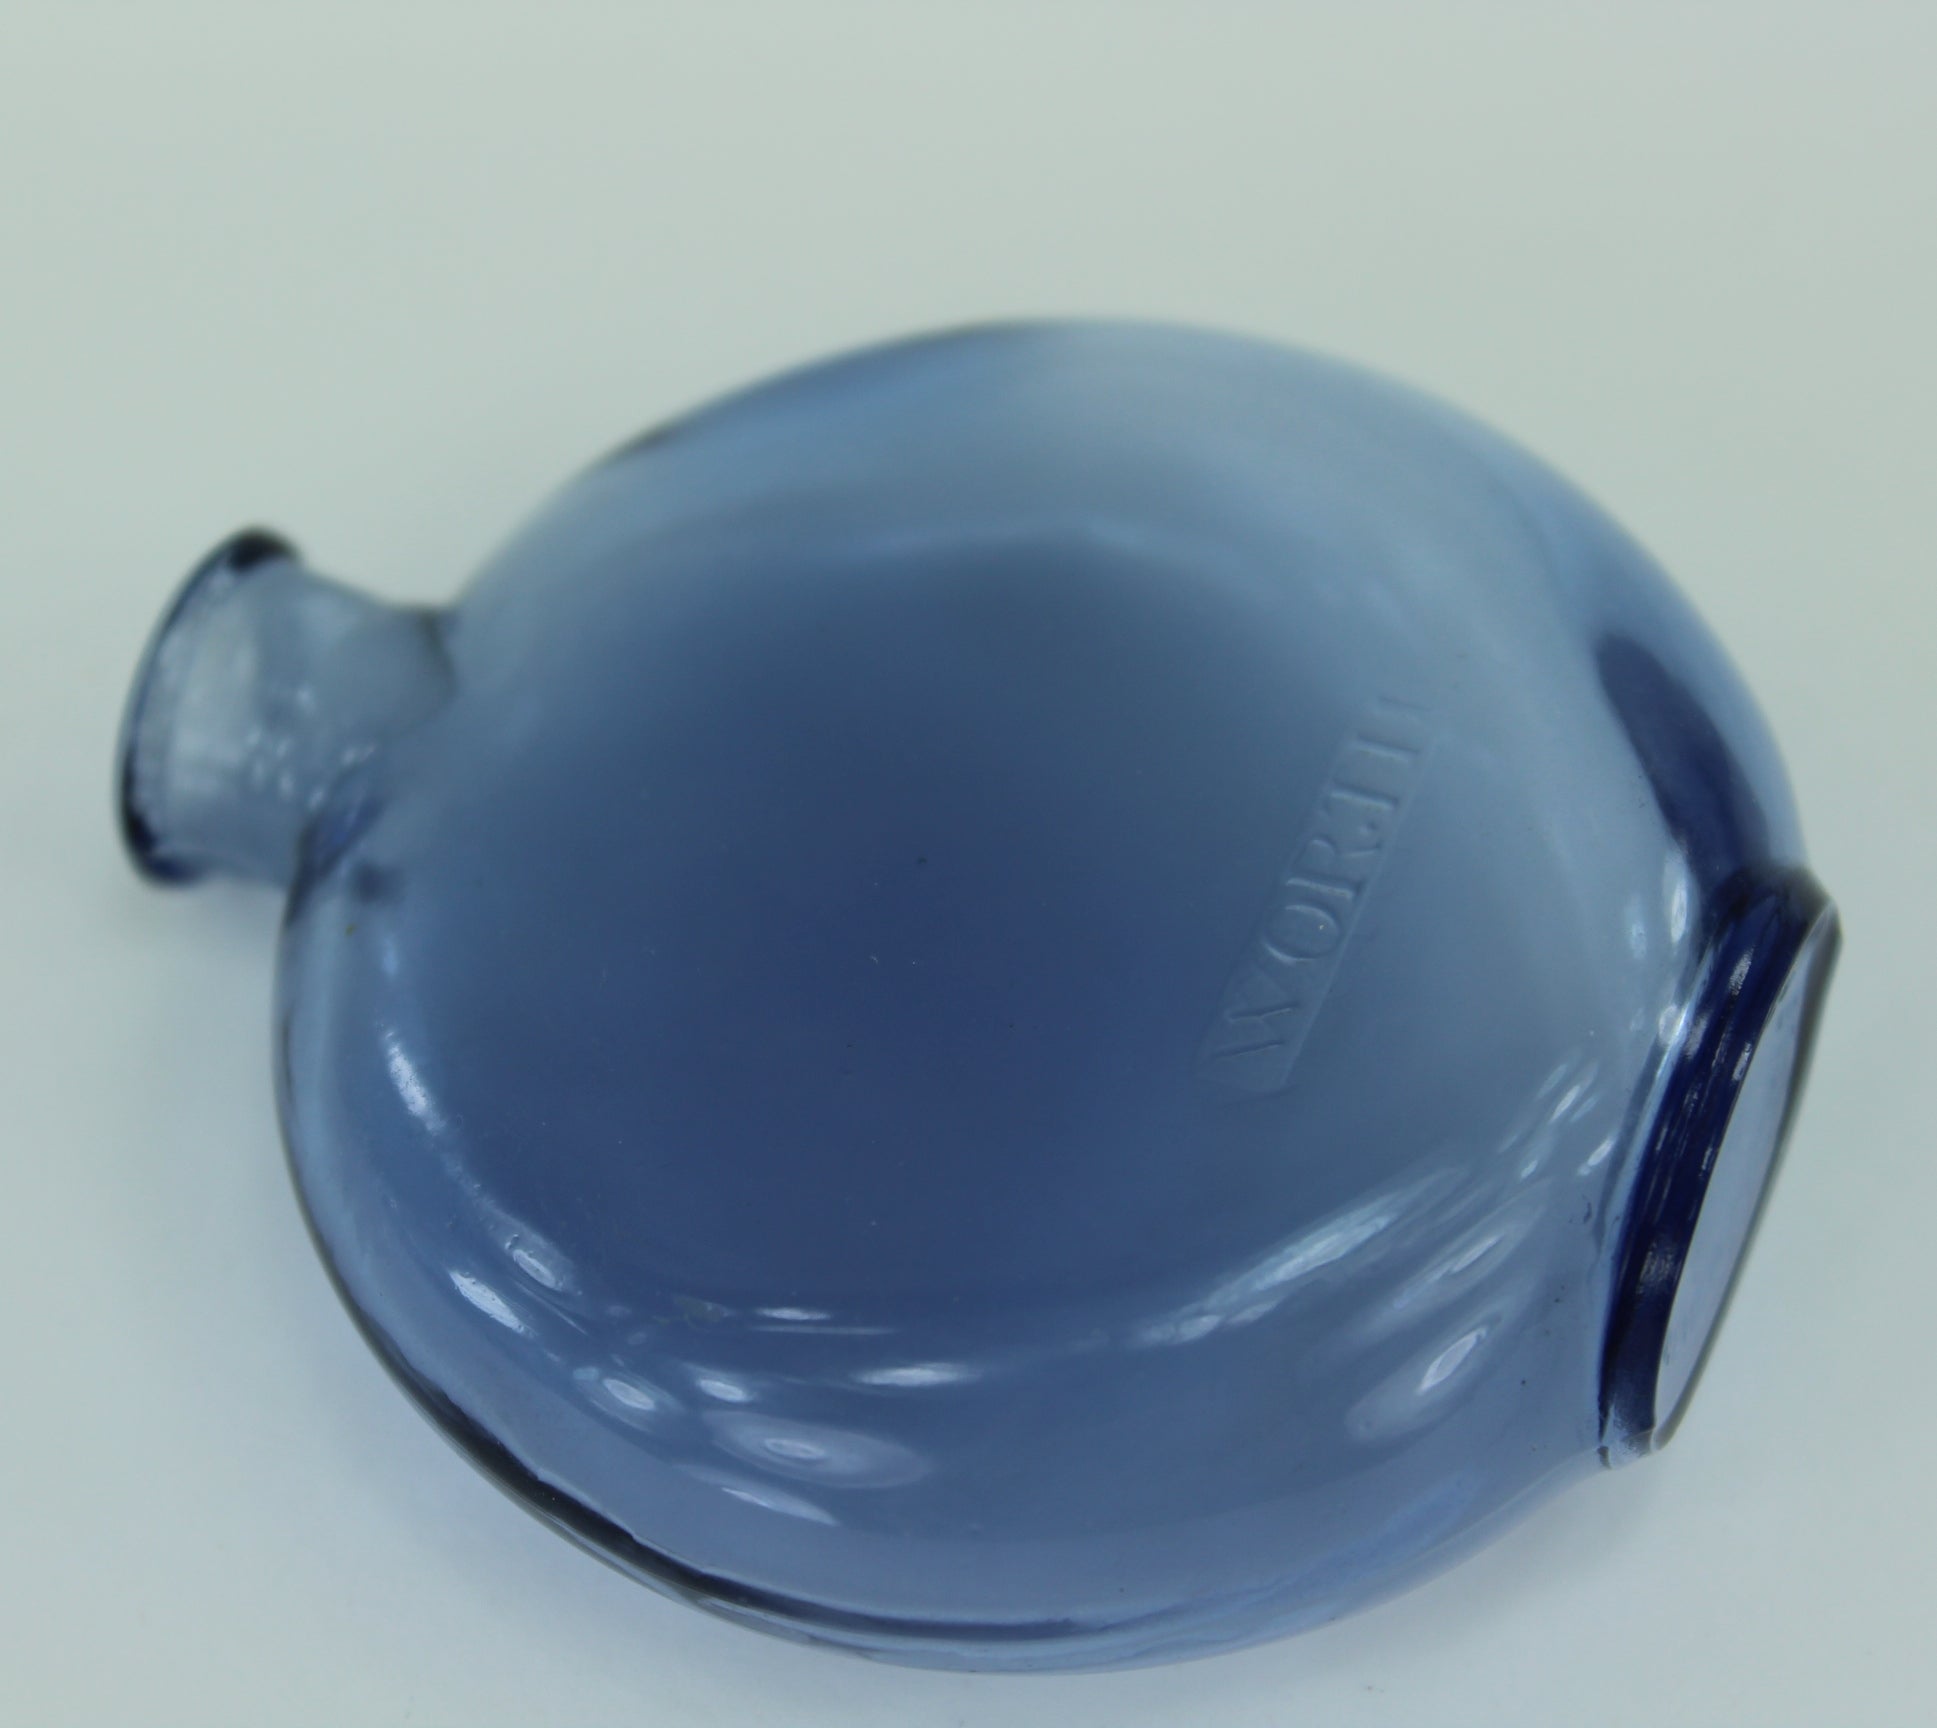 R Lalique Worth Blue Glass Perfume JE Revien Empty Bottle 1 oz French Bottle Mark 1930s launch